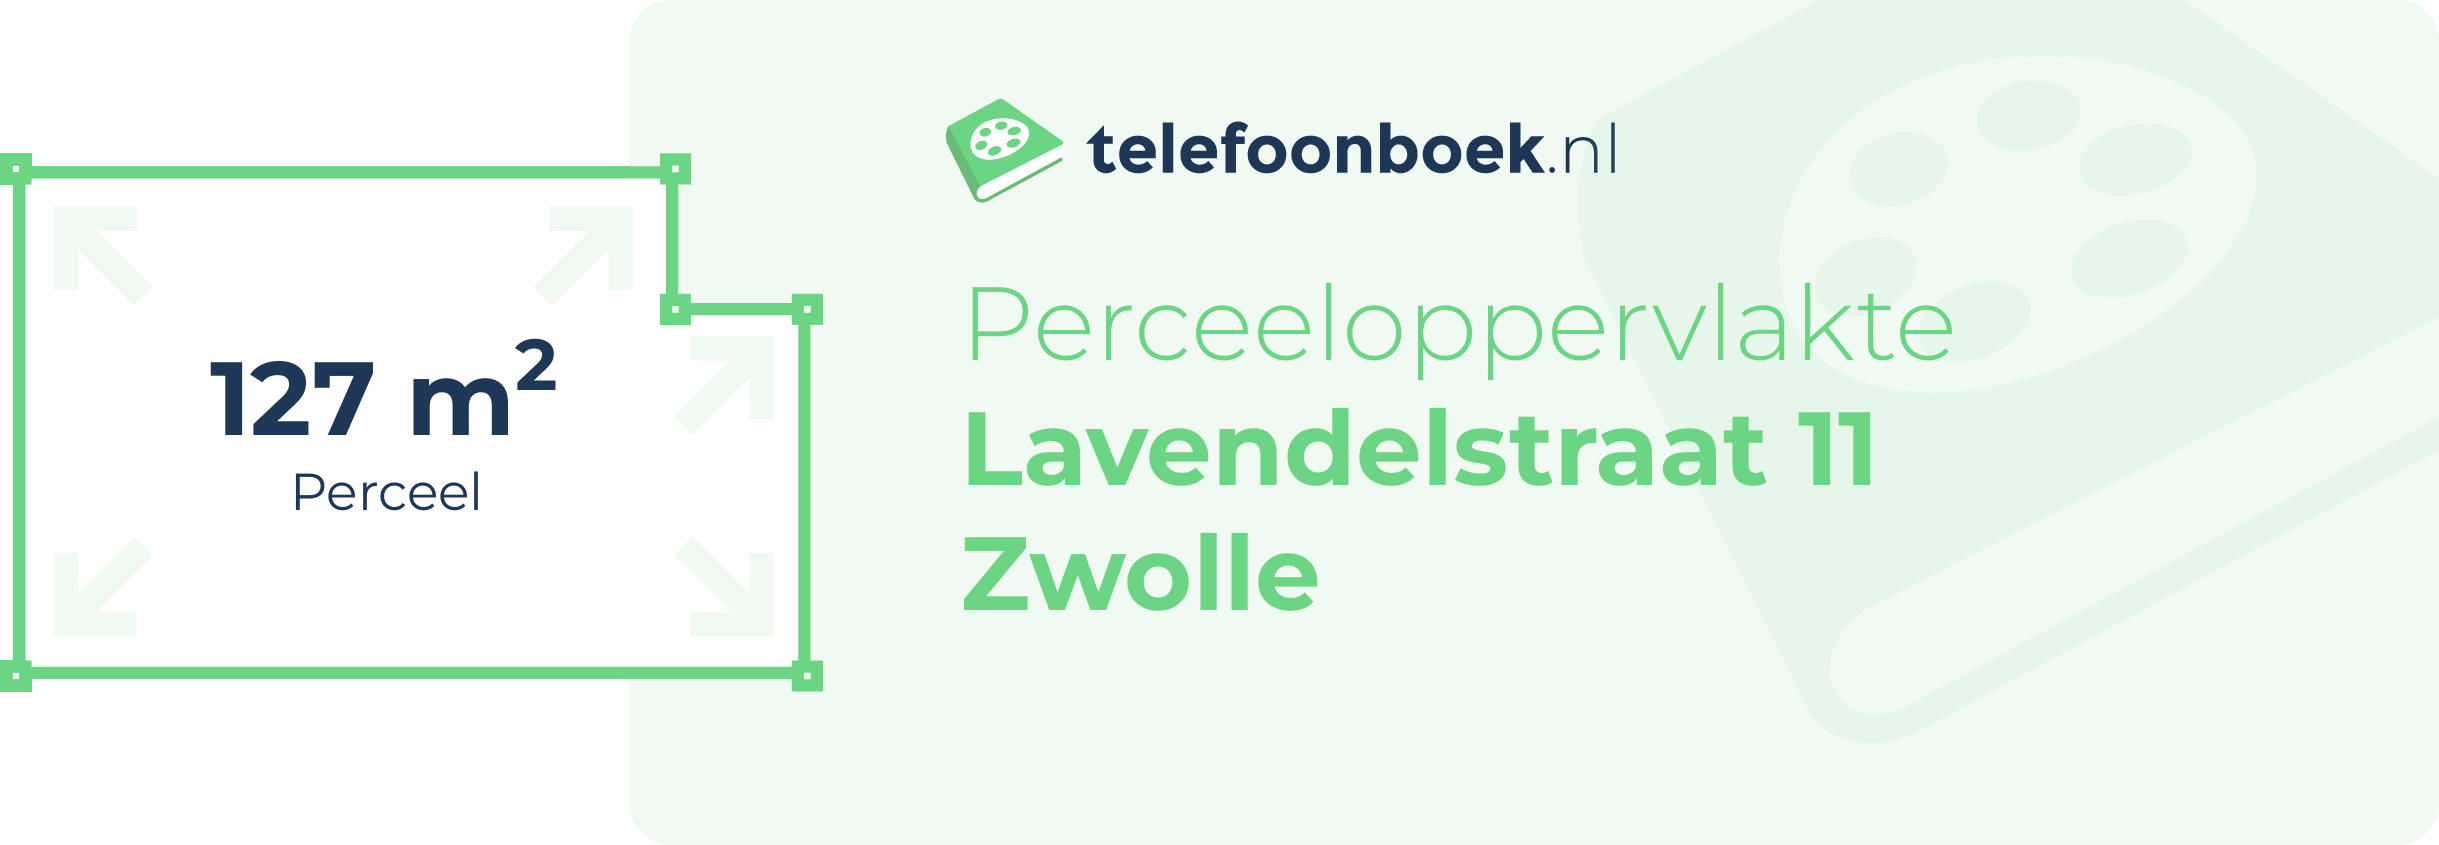 Perceeloppervlakte Lavendelstraat 11 Zwolle